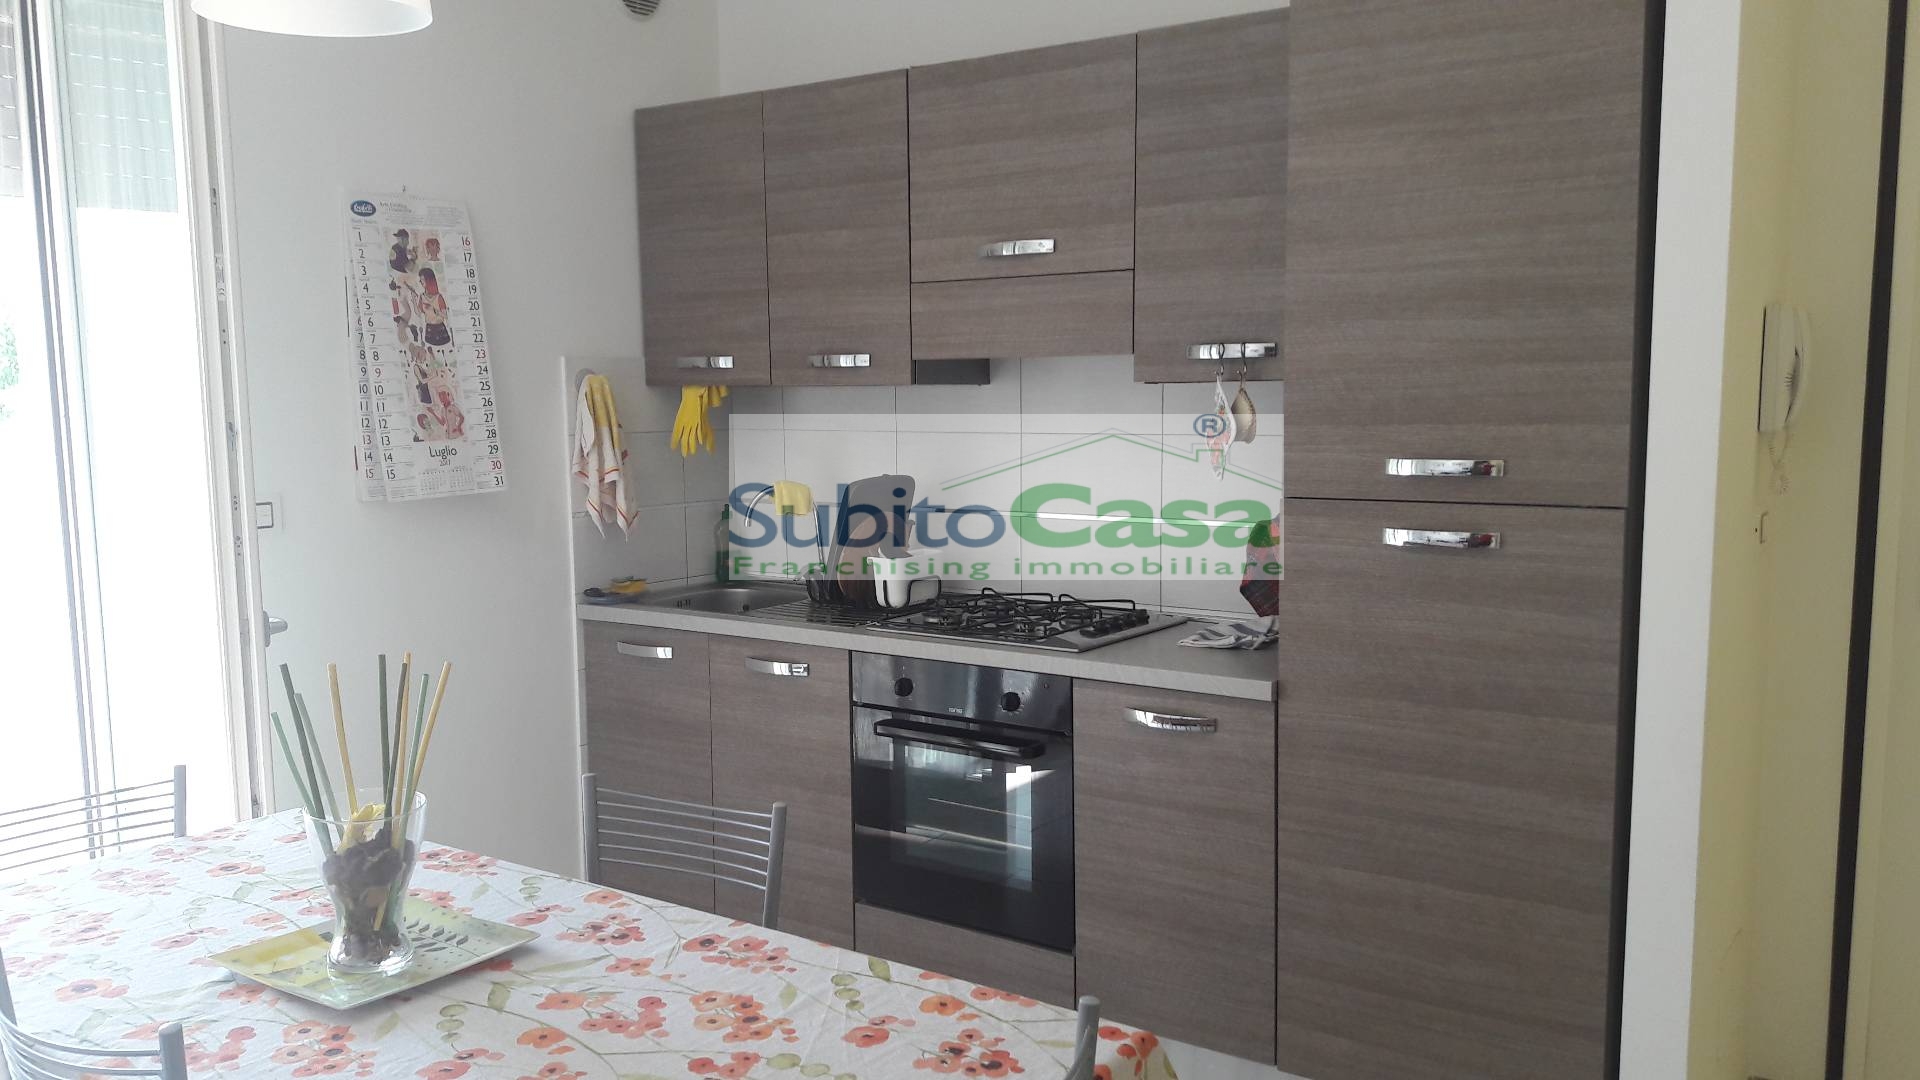 Appartamento in affitto a Chieti, 4 locali, zona Località: ChietiScaloZonaVillaggioMediterraneo, prezzo € 245 | PortaleAgenzieImmobiliari.it